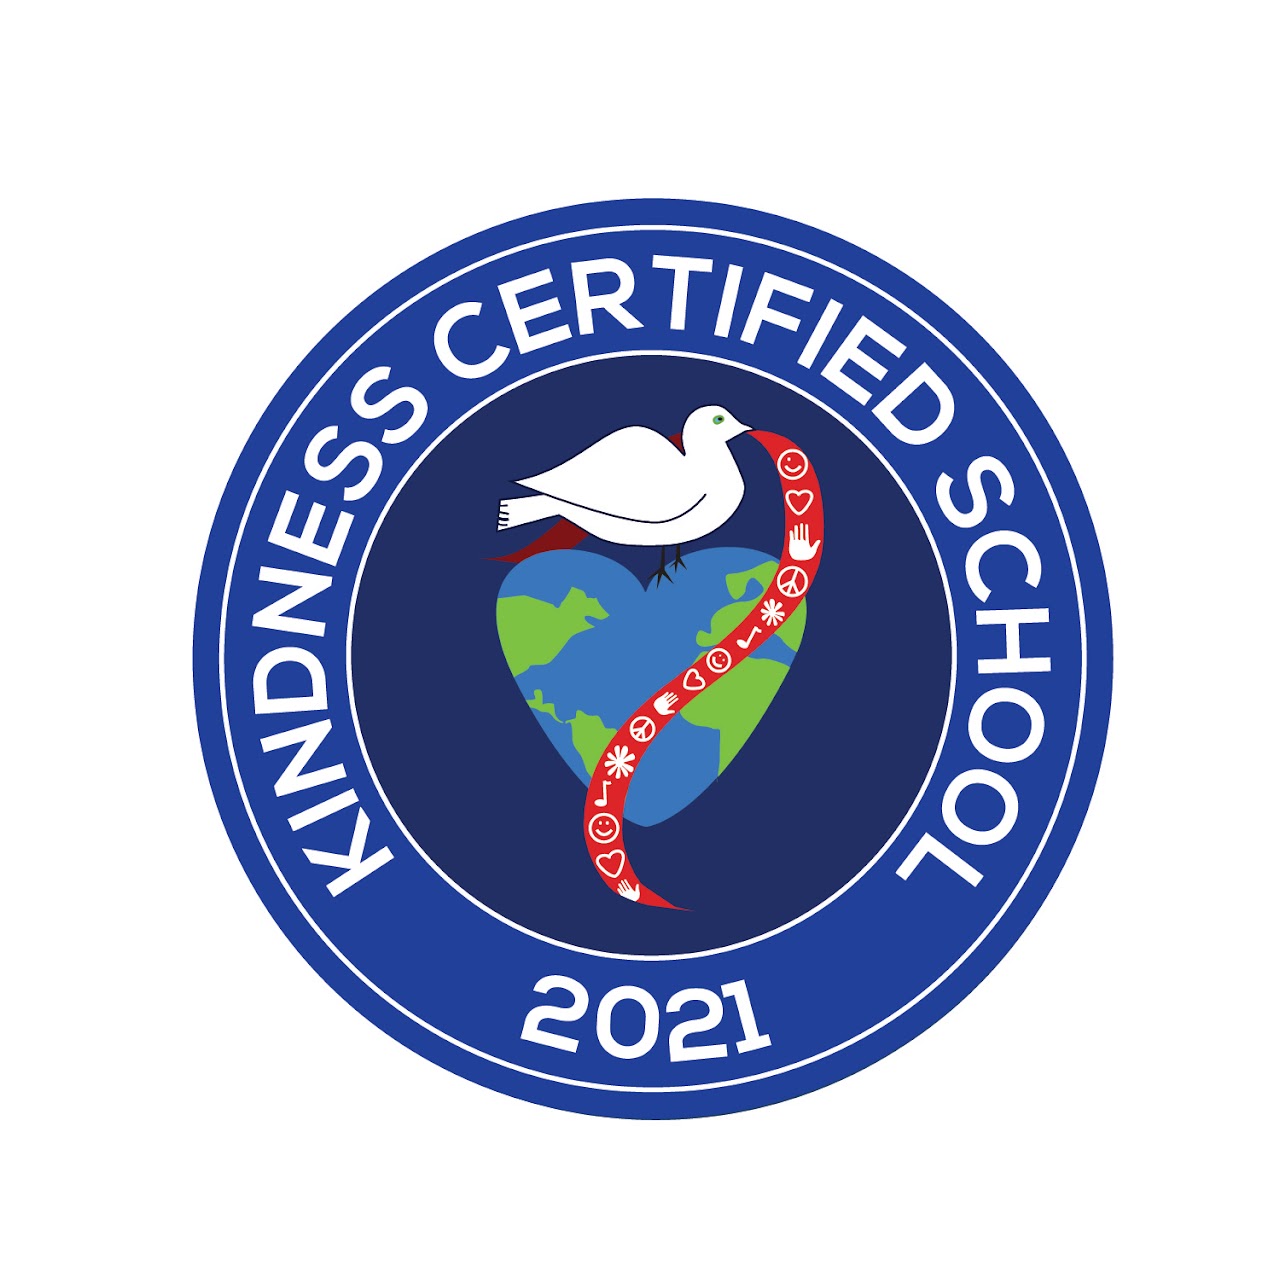 Business certified school 2021 logo in blue